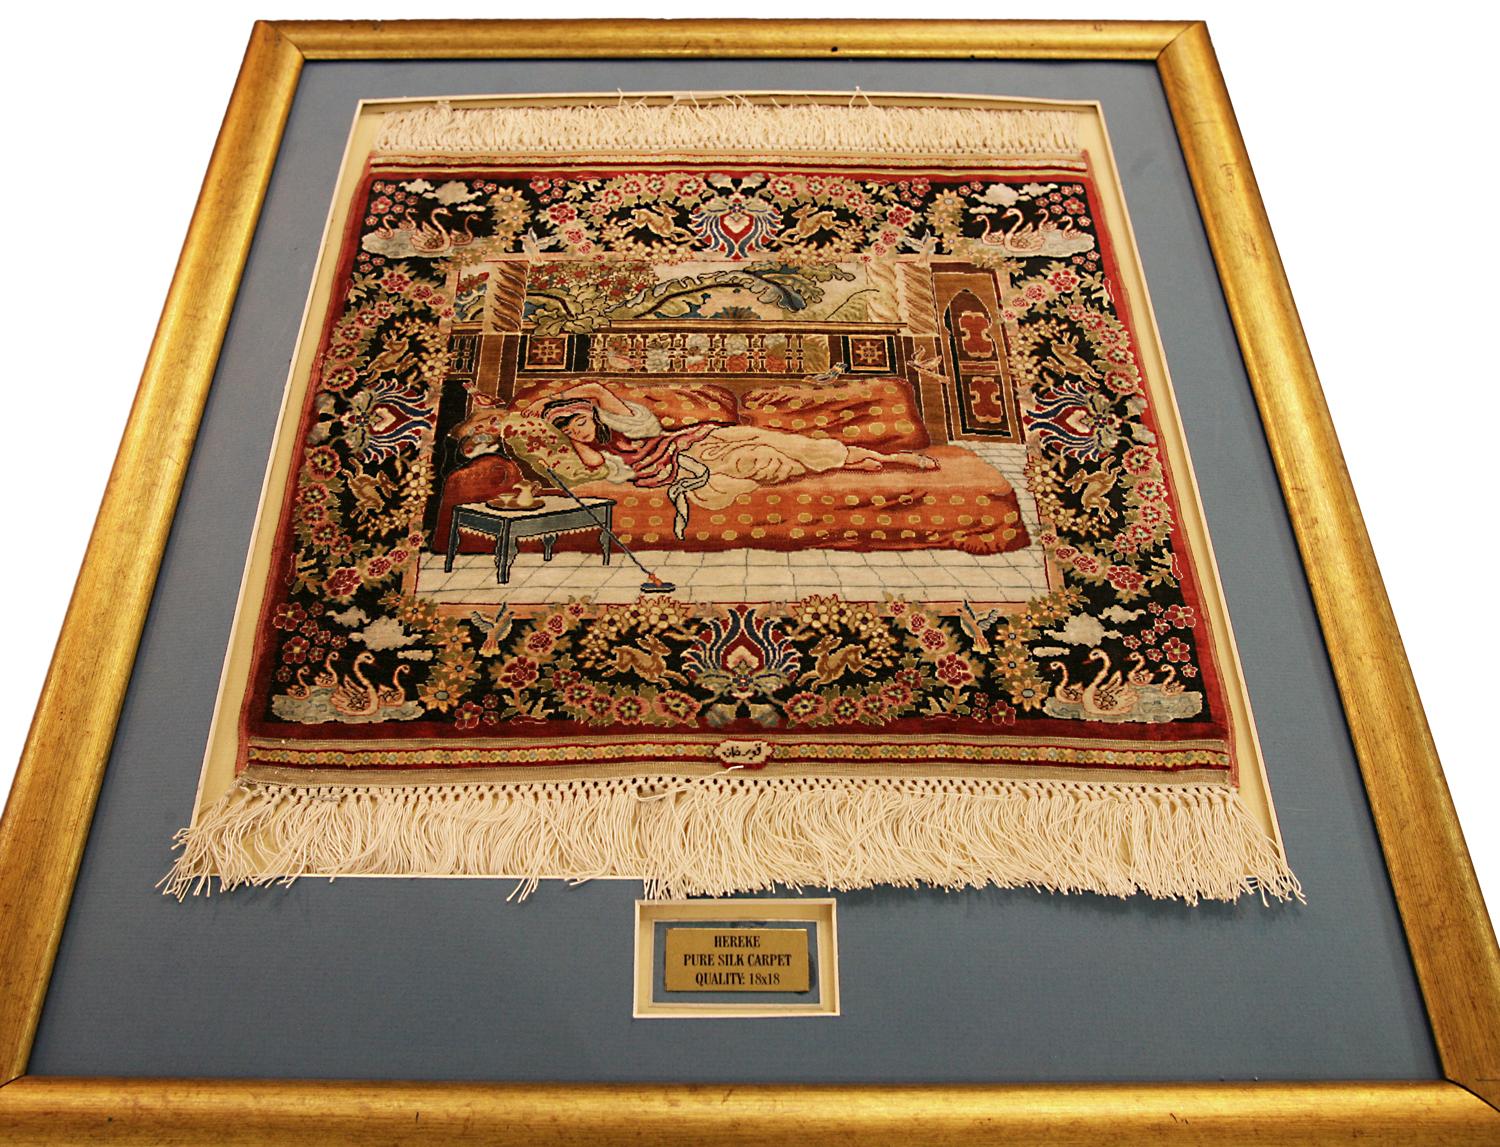 Il s'agit d'un très beau tapis en soie Hereke tissé en Turquie au cours du dernier quart du 20e siècle, vers les années 1970-2000. Il mesure 36 x 32 cm. 
Ce tapis pictural a un tissage 18x18, ce qui signifie qu'il comporte 18 nœuds verticalement et